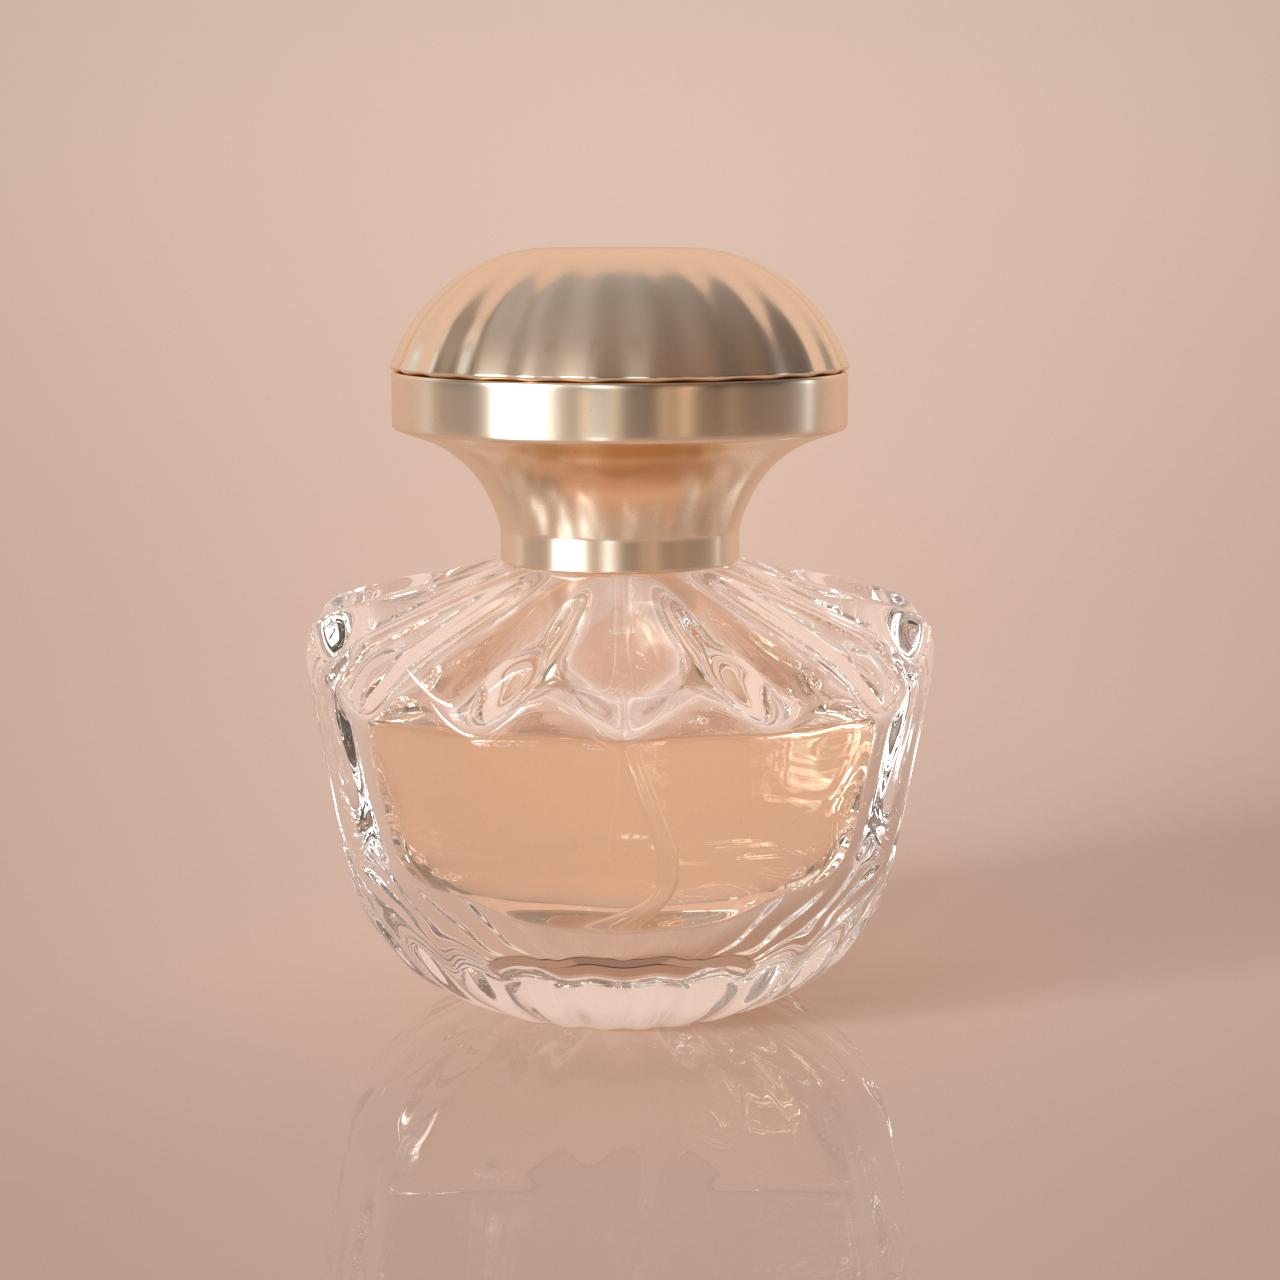 shell shaped perfume bottle